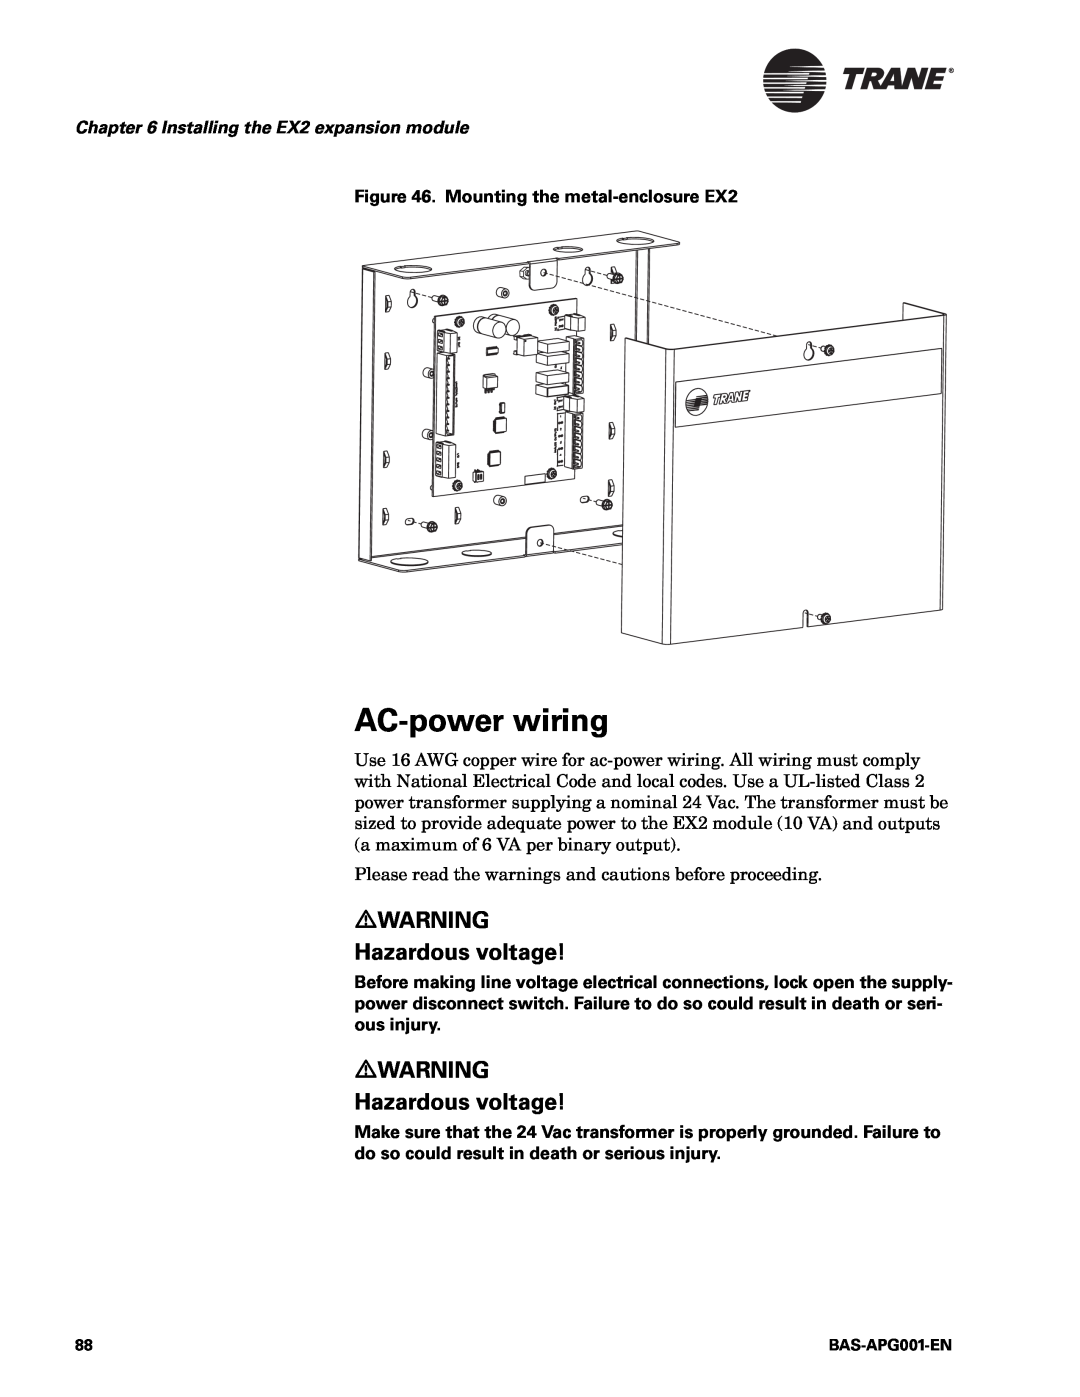 Trane BAS-APG001-EN manual AC-powerwiring, Hazardous voltage, Installing the EX2 expansion module 